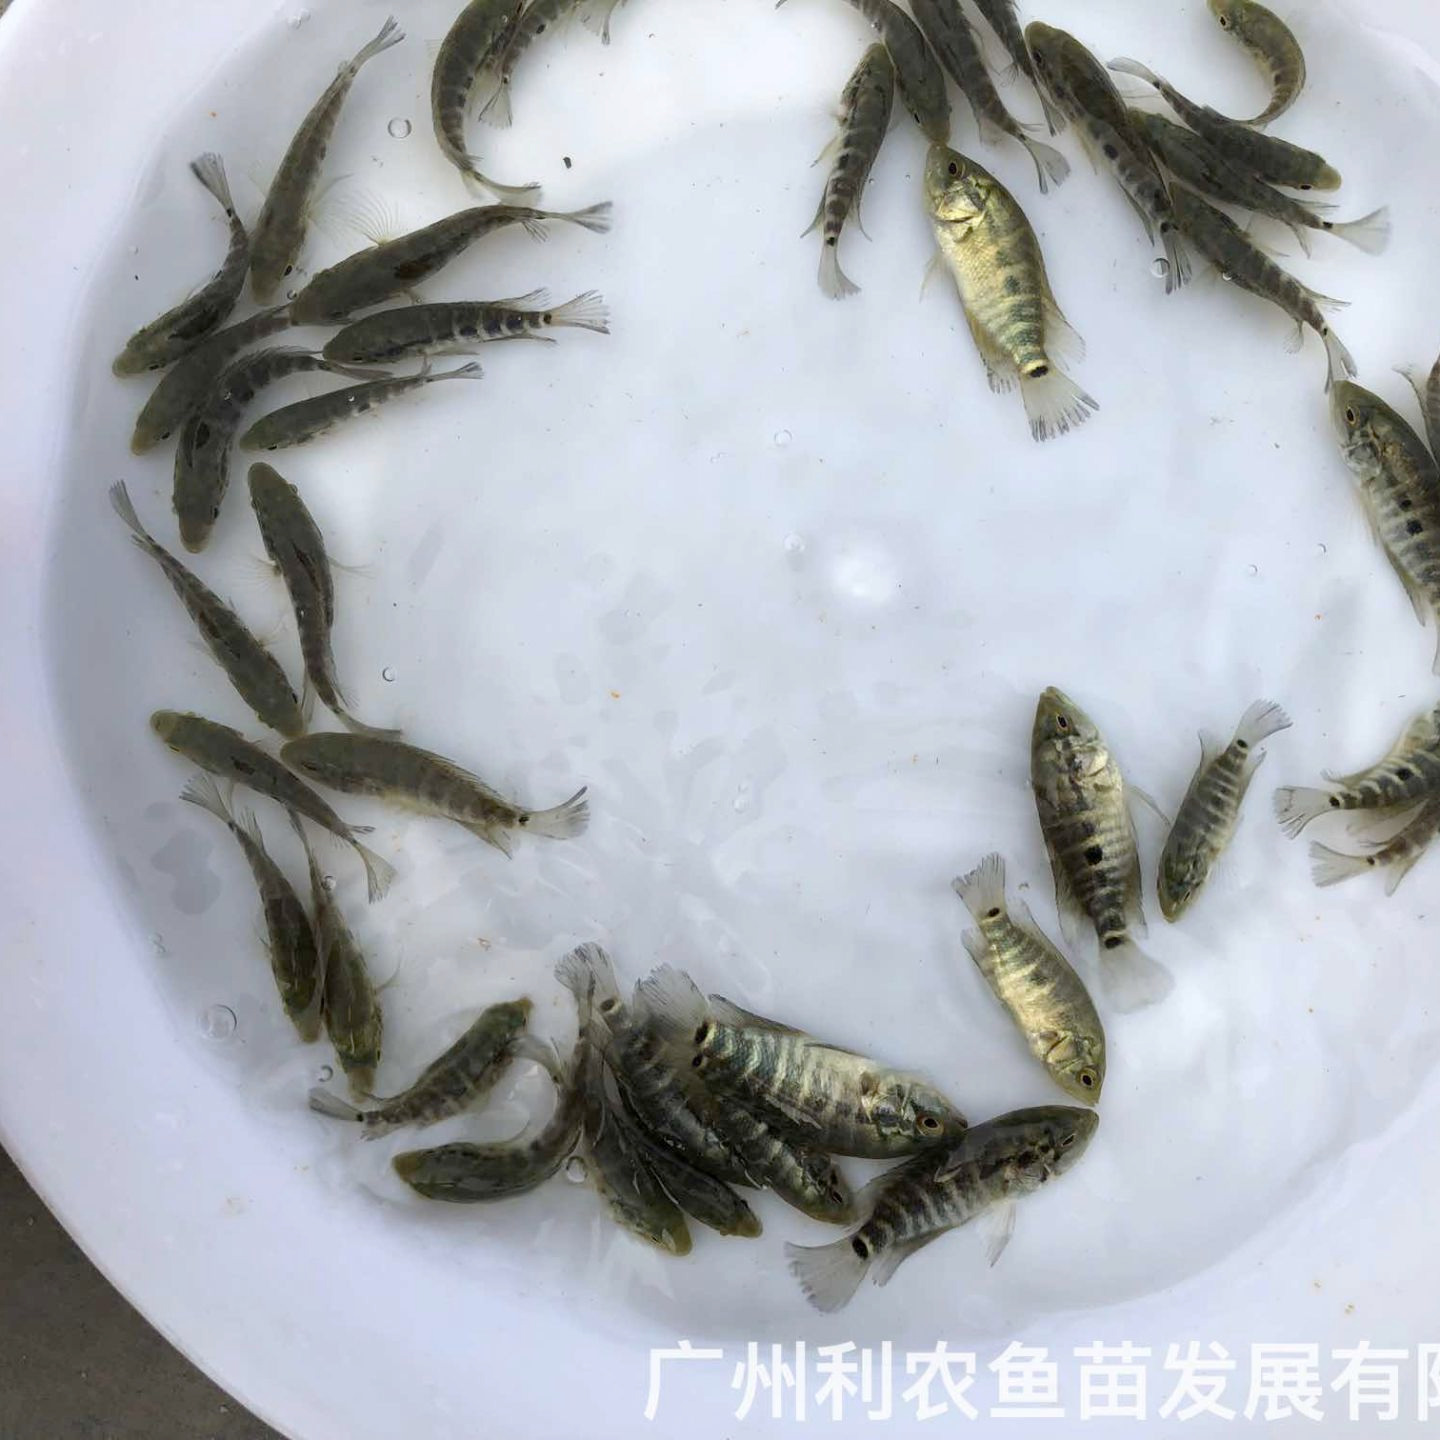 广西防城港淡水花斑鱼苗出售广西贺州石斑鱼苗批发价格